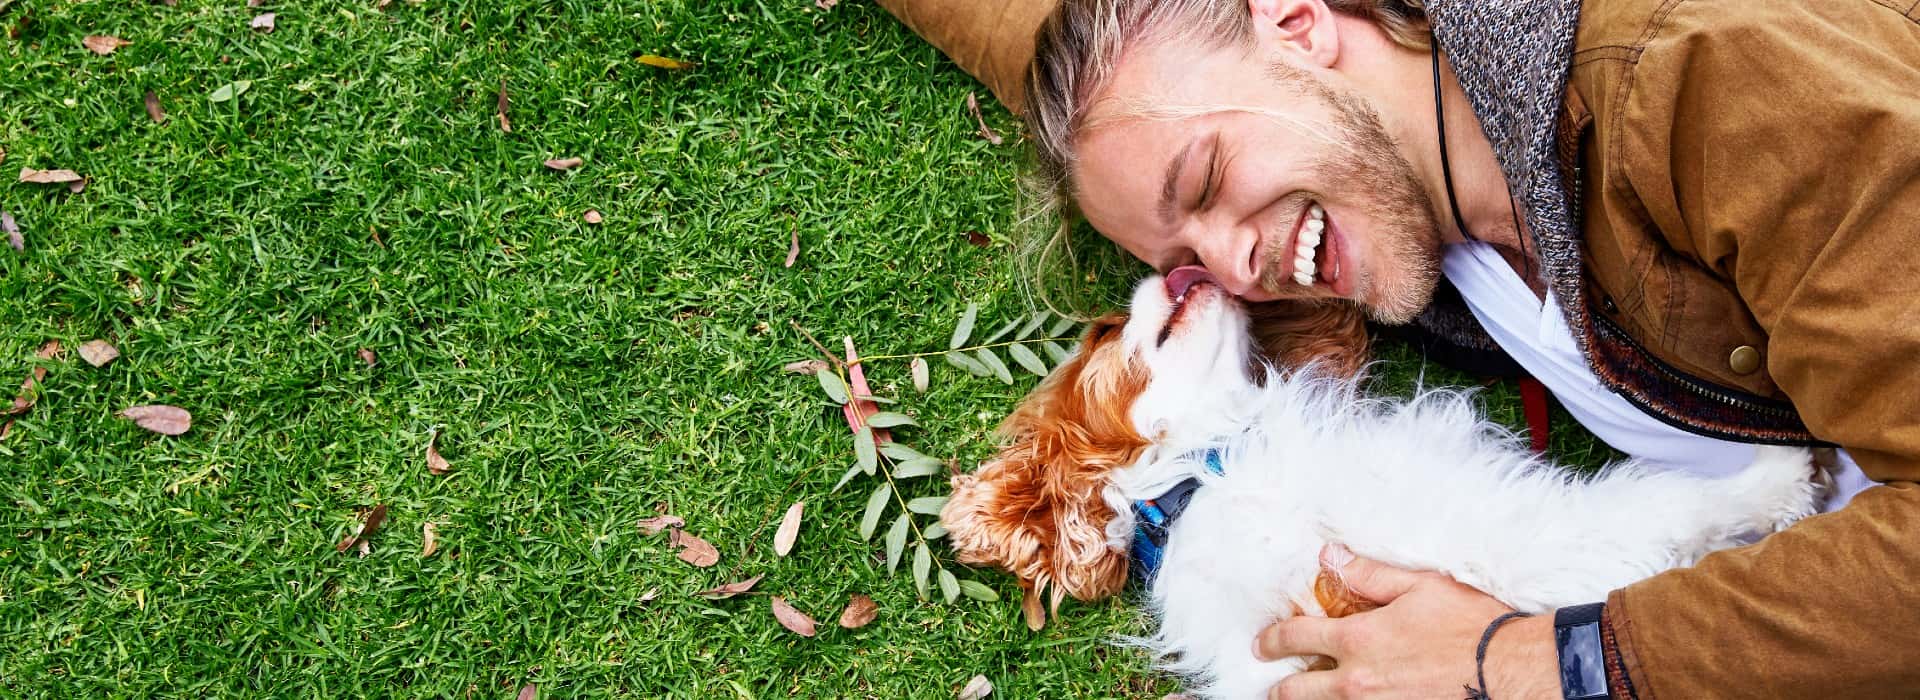 一个男人和一只棕白相间的小狗躺在草地上. 狗舔着男人的脸，男人在笑.